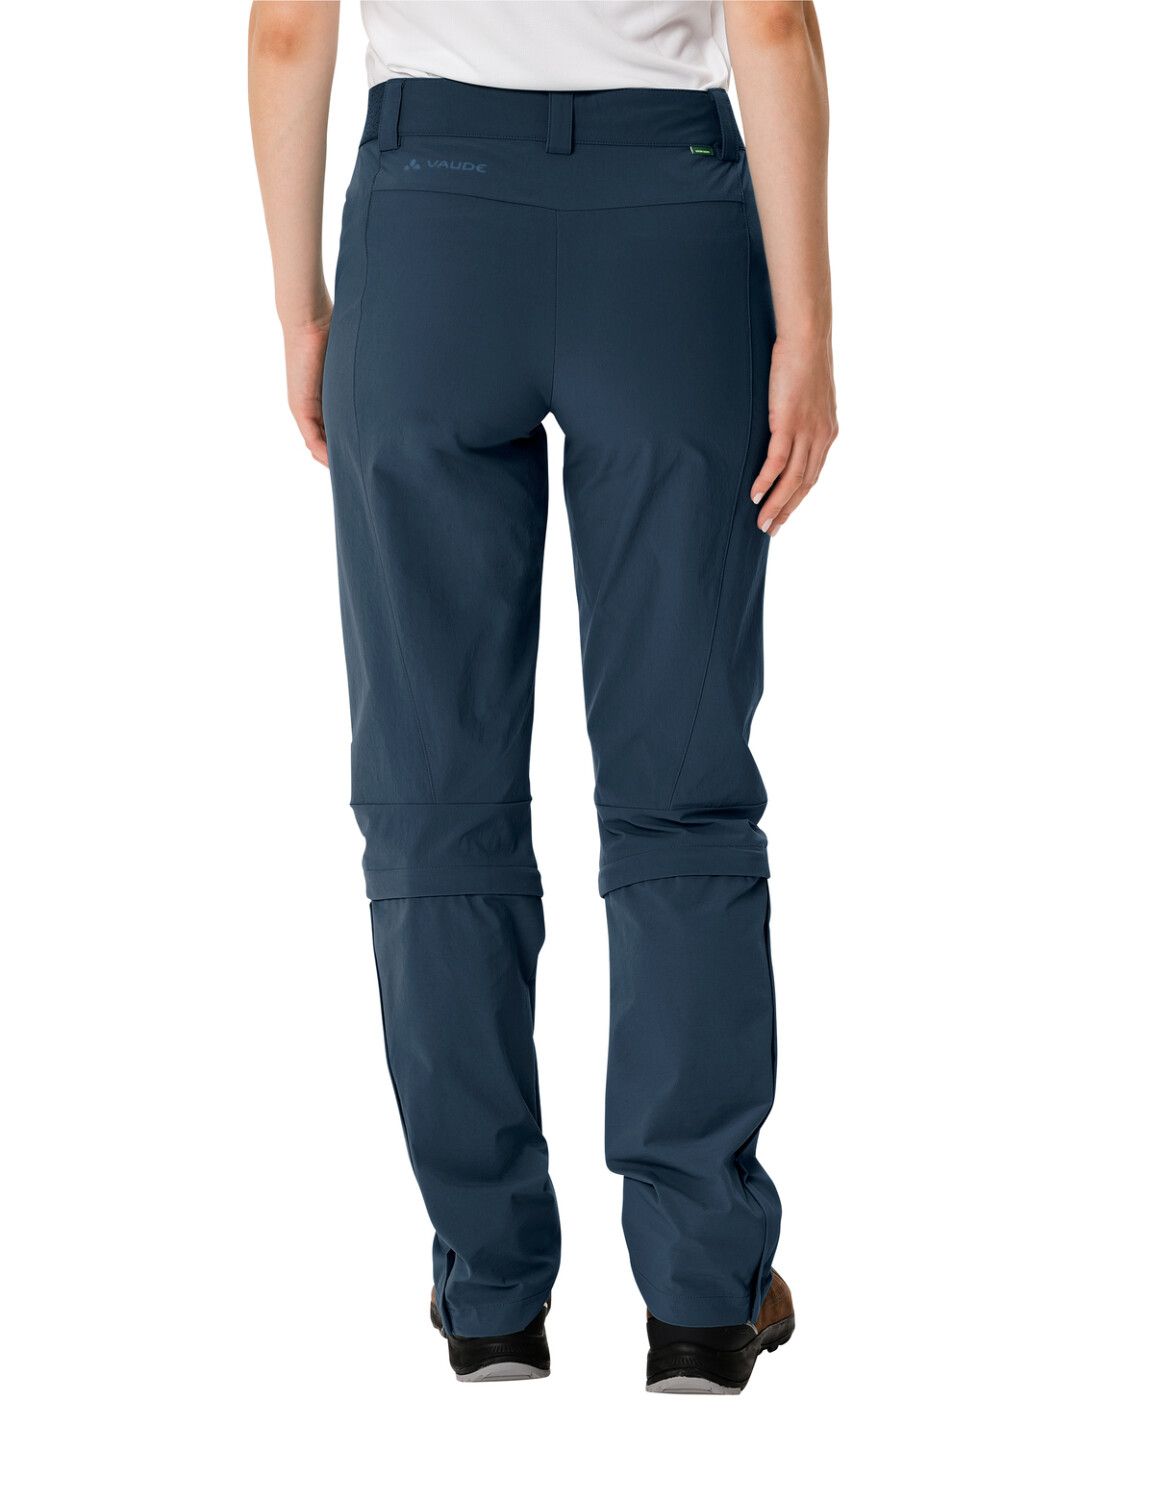 VAUDE Women's Farley Stretch Capri T-Zip Pants III (Bild 49)